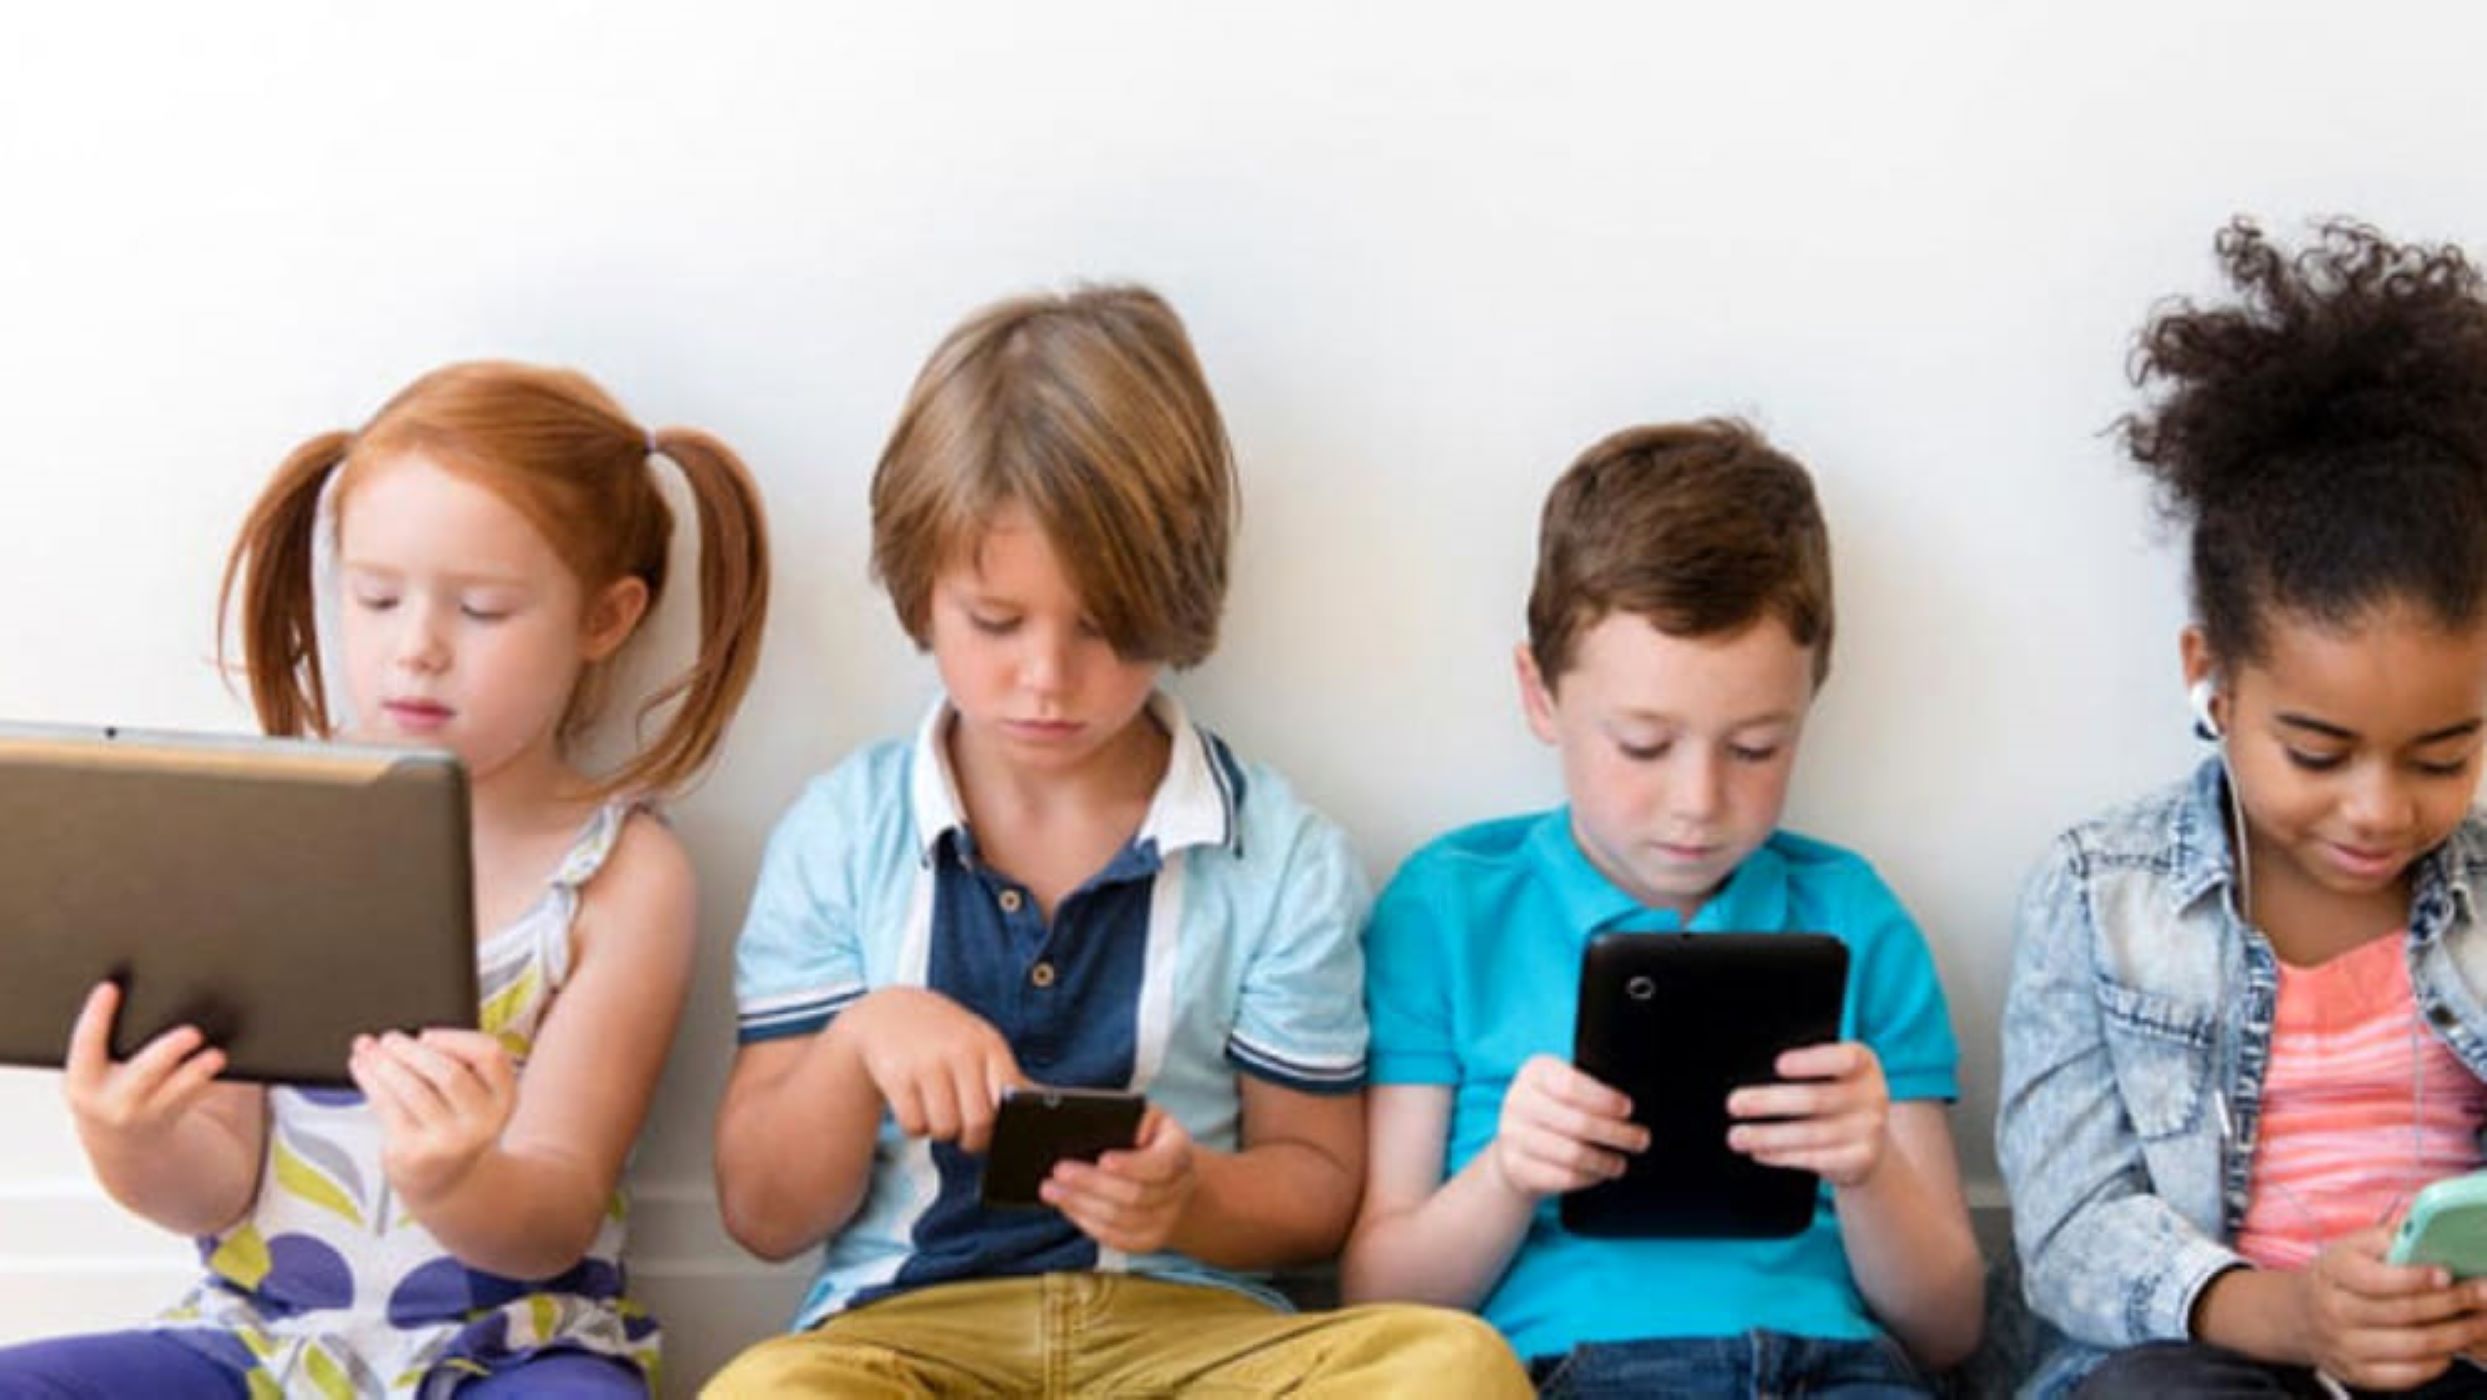 Bambini fanno uso eccessivo dei dispositivi elettronici